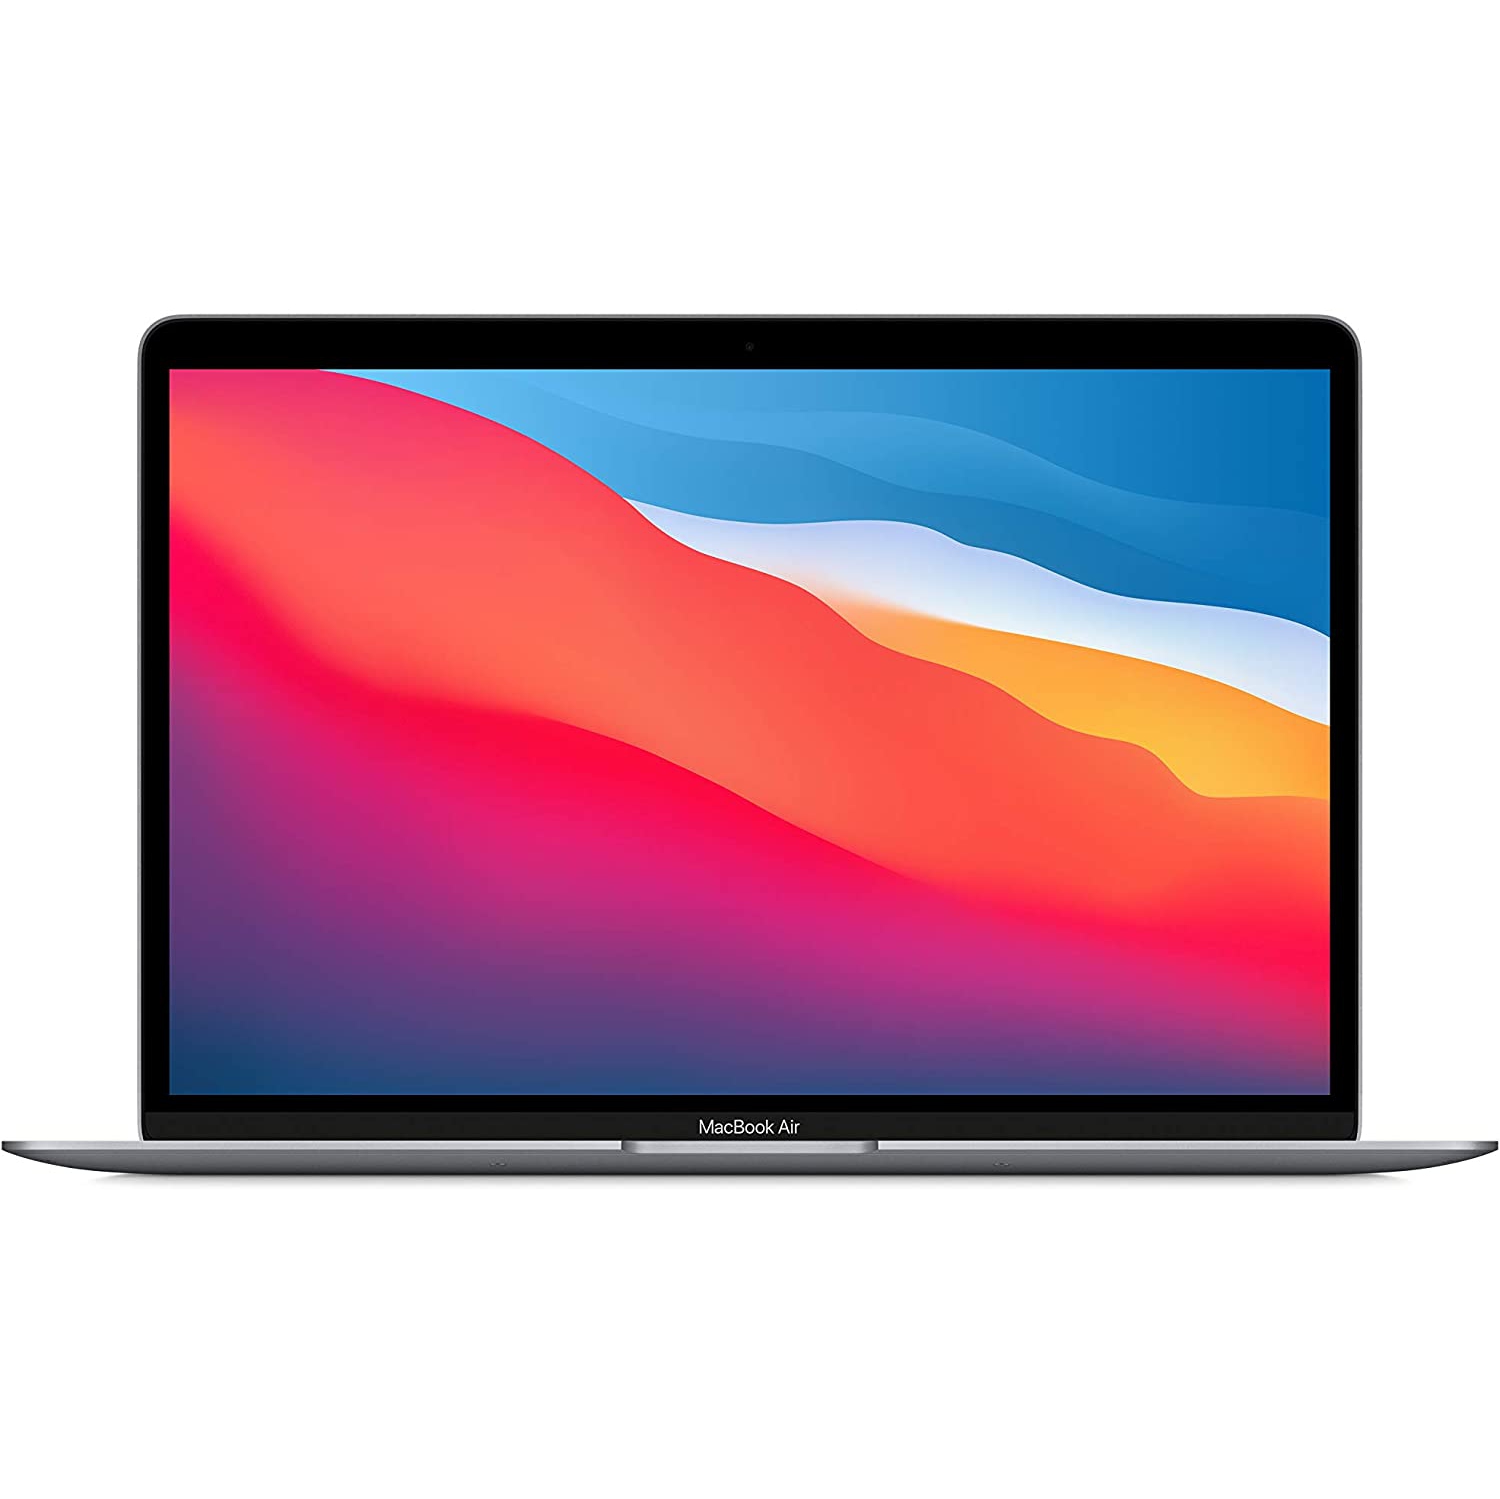 Refurbished (Excellent) - Apple MacBook Air 13.3" (Fall 2020) - Space Gray (Apple M1 Chip / 512GB SSD / 8GB RAM) - En - Certified Refurbished